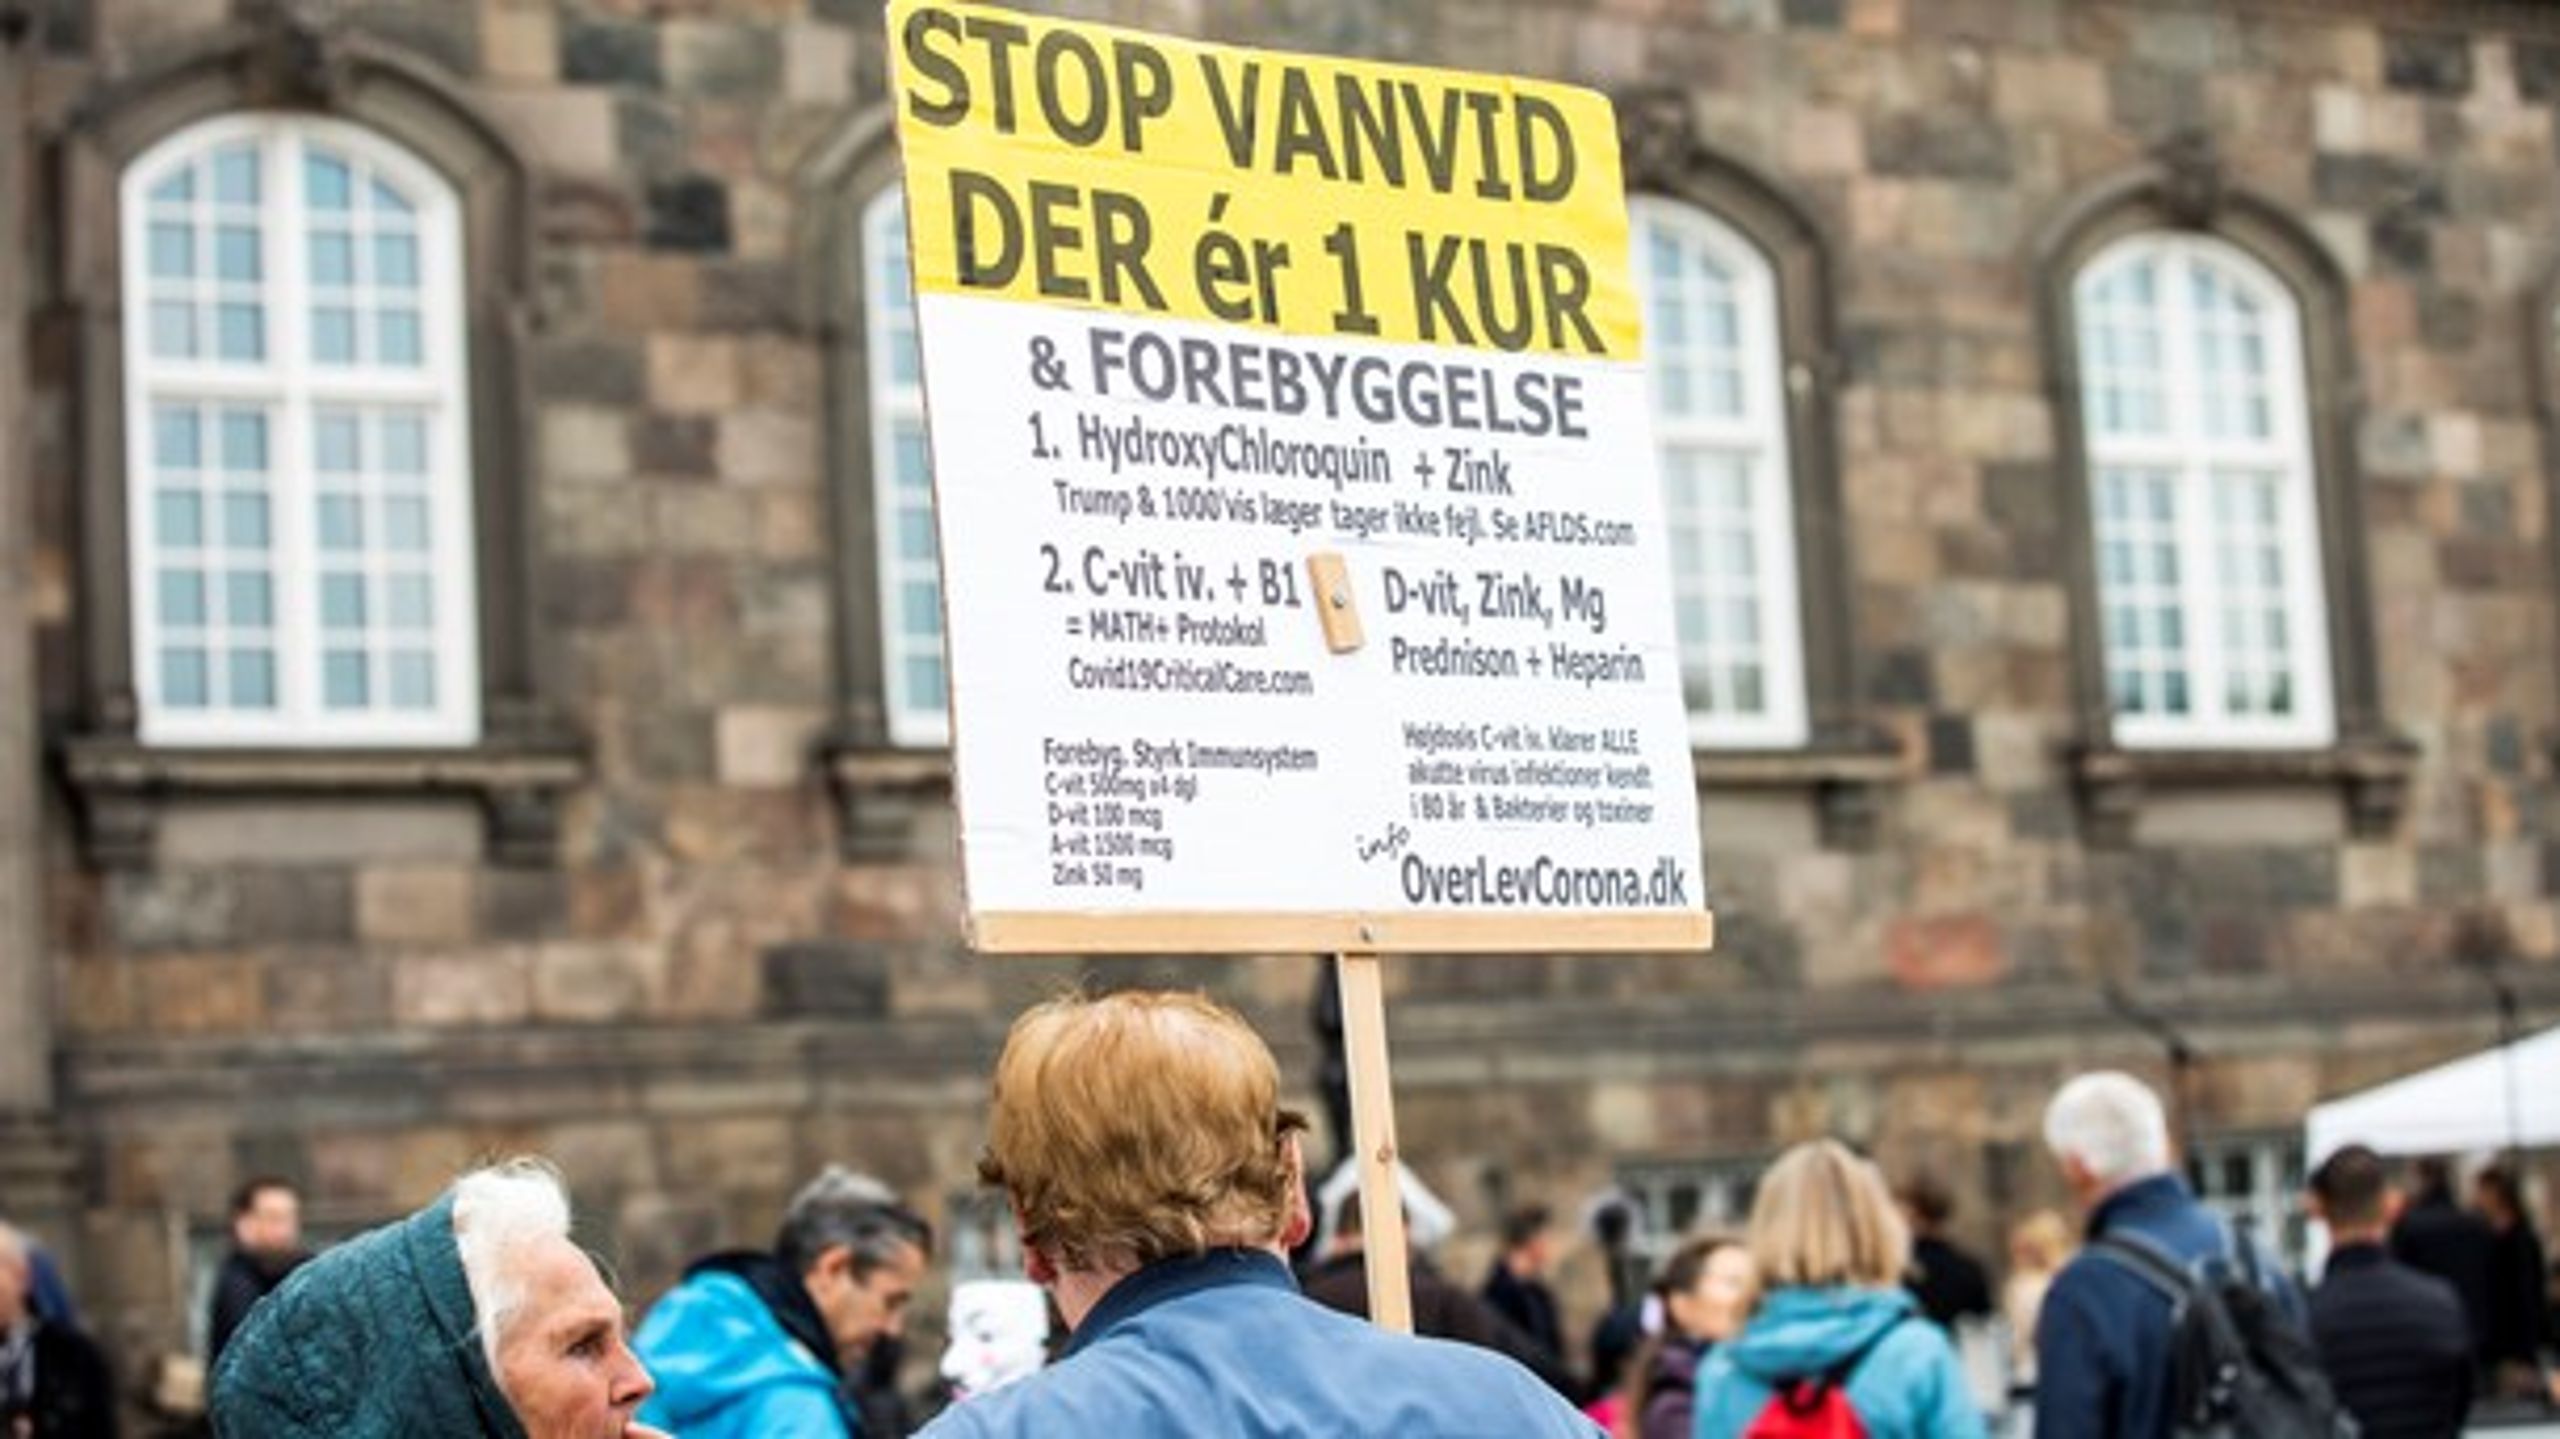 De fleste danskere har nuancerede holdninger til vacciner, men yderfløjene fylder meget i den offentlige debat, skriver Anton Pottegård og Christine Stabell Benn. Fotoet stammer fra en demonstration foran Christiansborg.